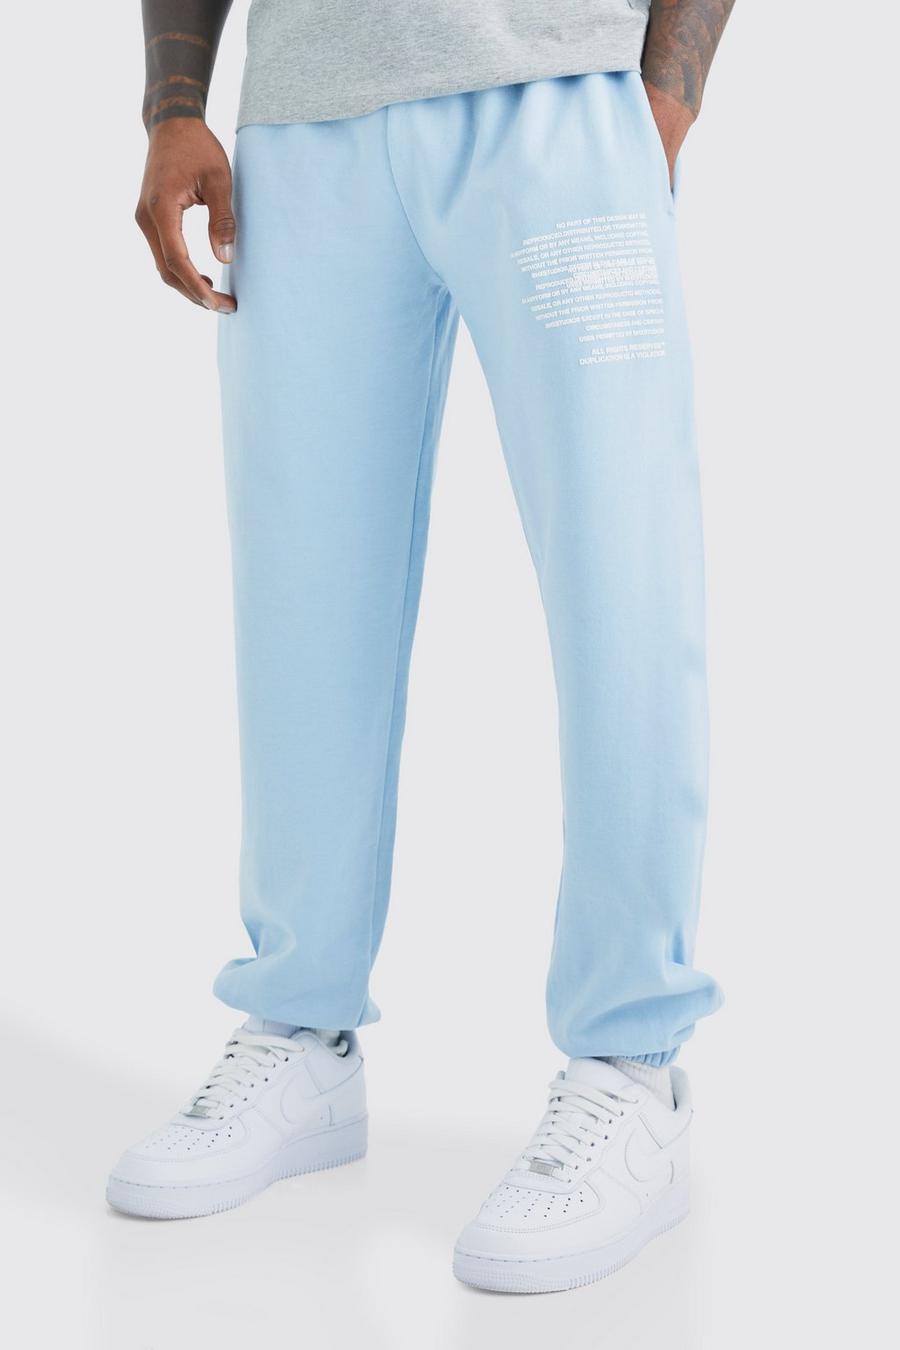 Pantaloni tuta con grafica di testo, Light blue